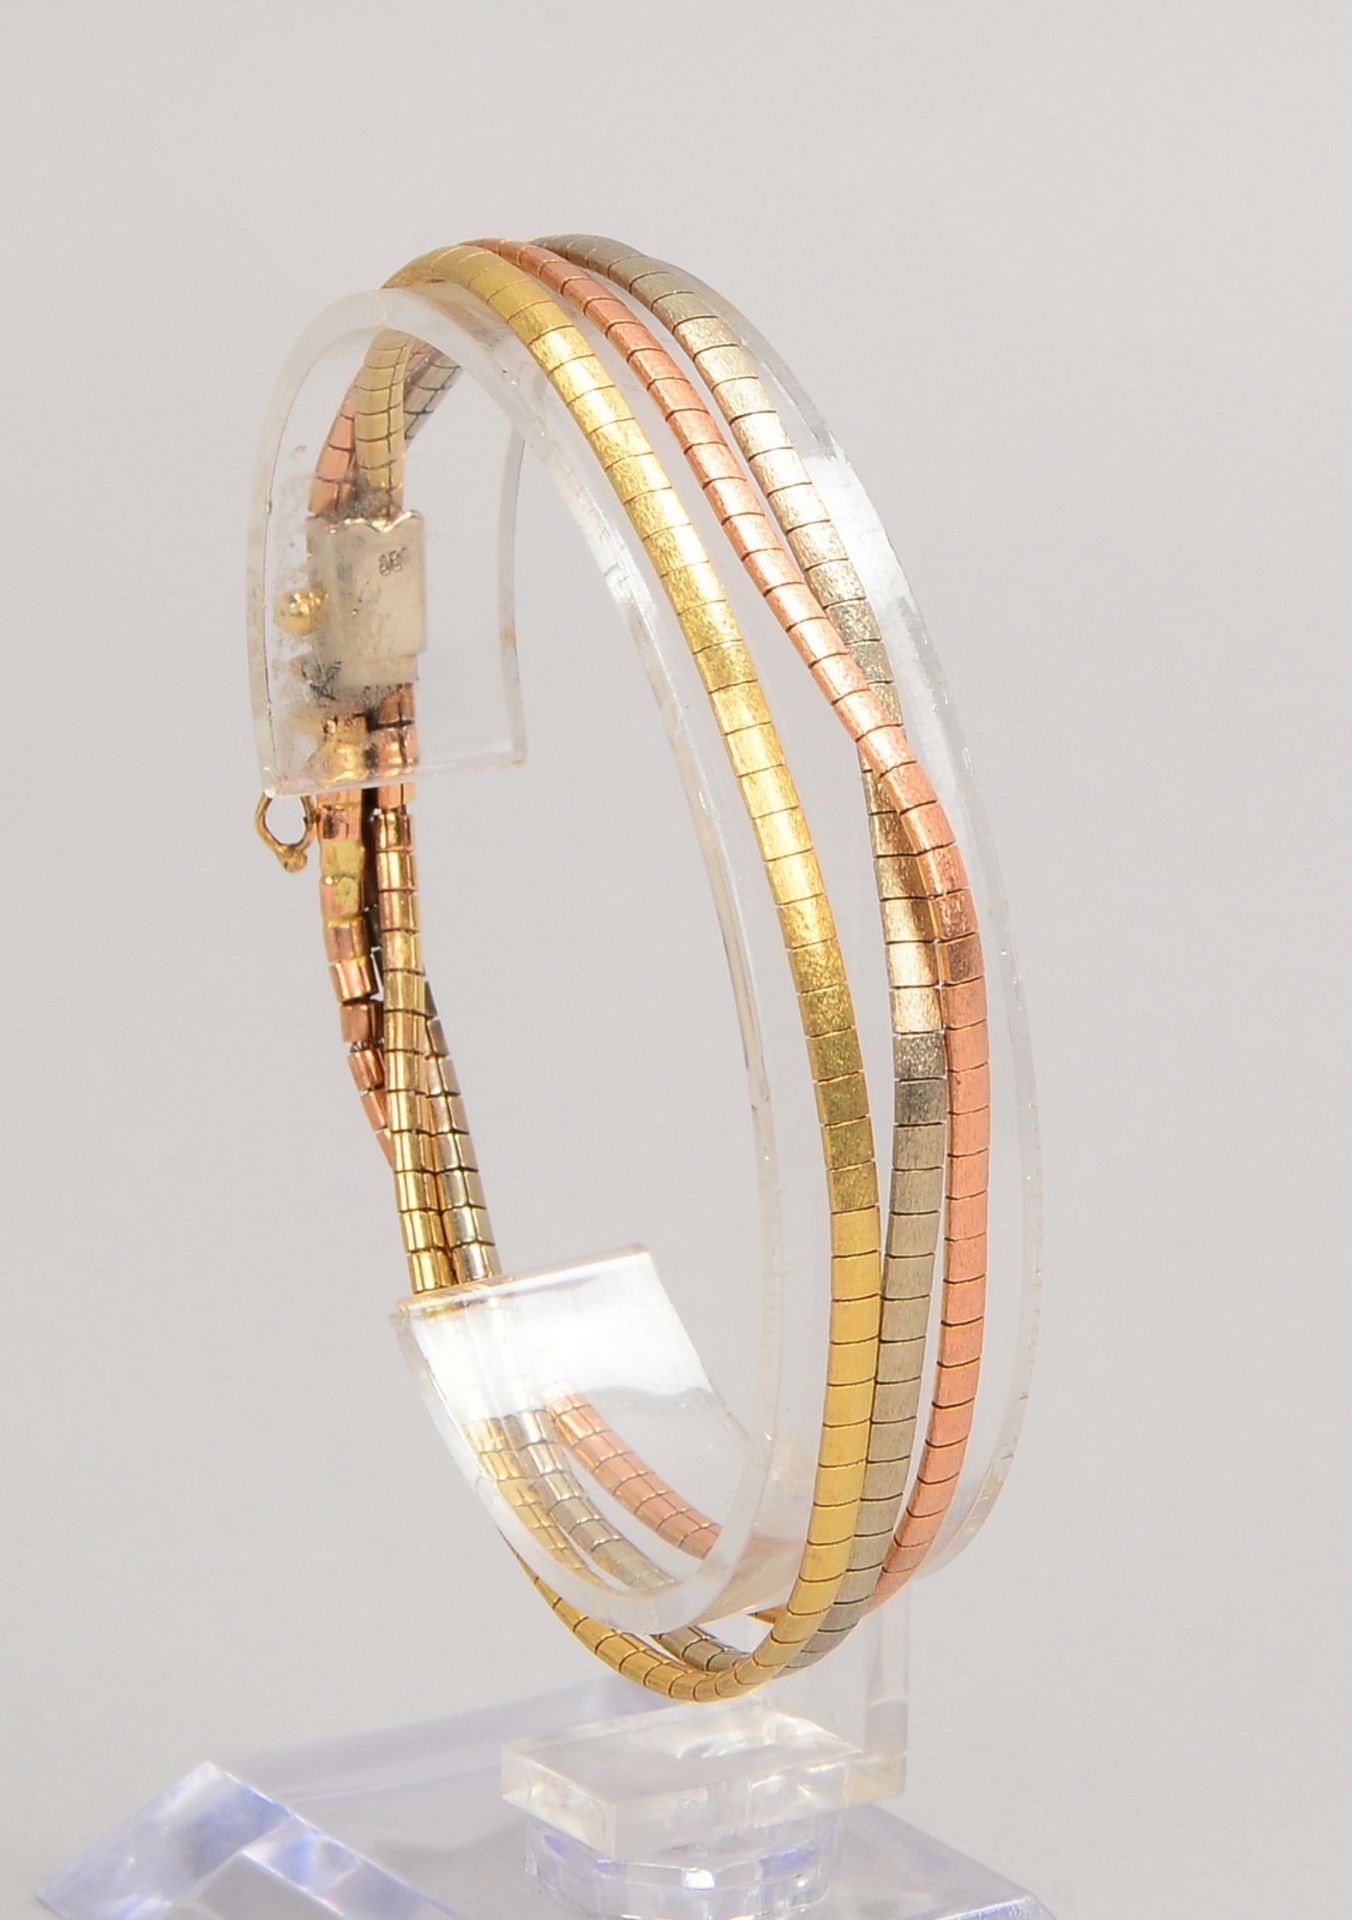 Armband, 585 Gold/Tricolor, 3-strängig, mit Steckschließe; Länge 18,5 cm, Gewicht 17,90 g